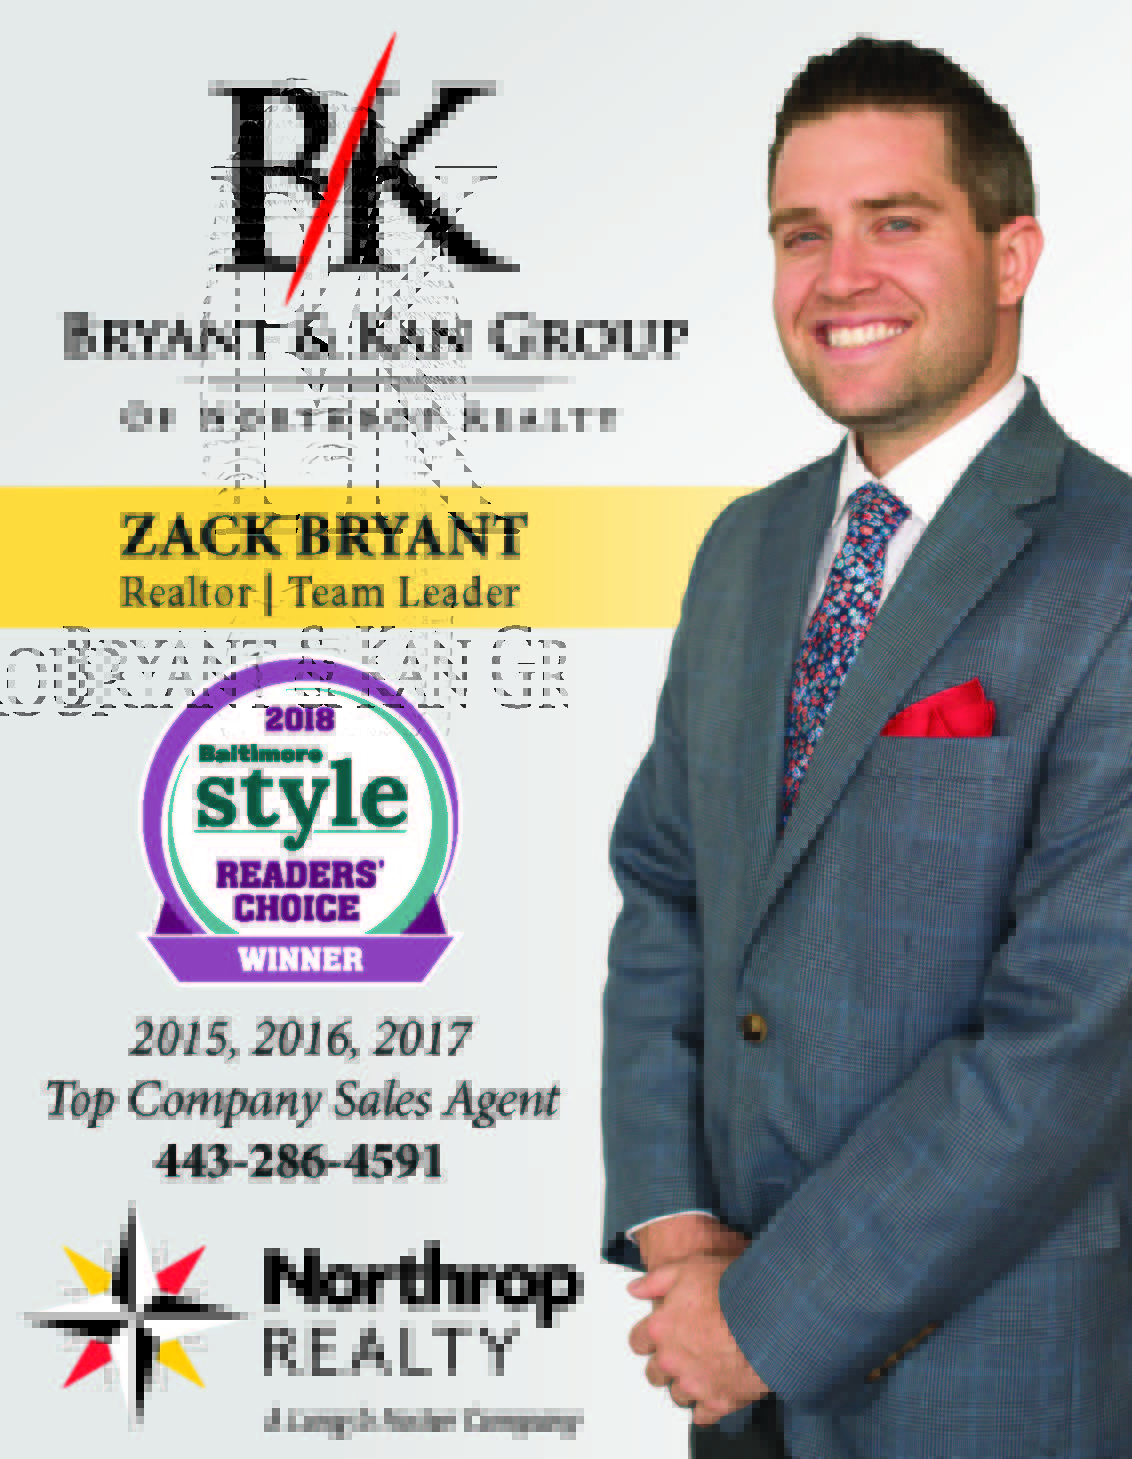 Zack Bryant named Baltimore STYLE Magazine's, 'Reader's Choice, Best of Baltimore Realtor,' WINNER!